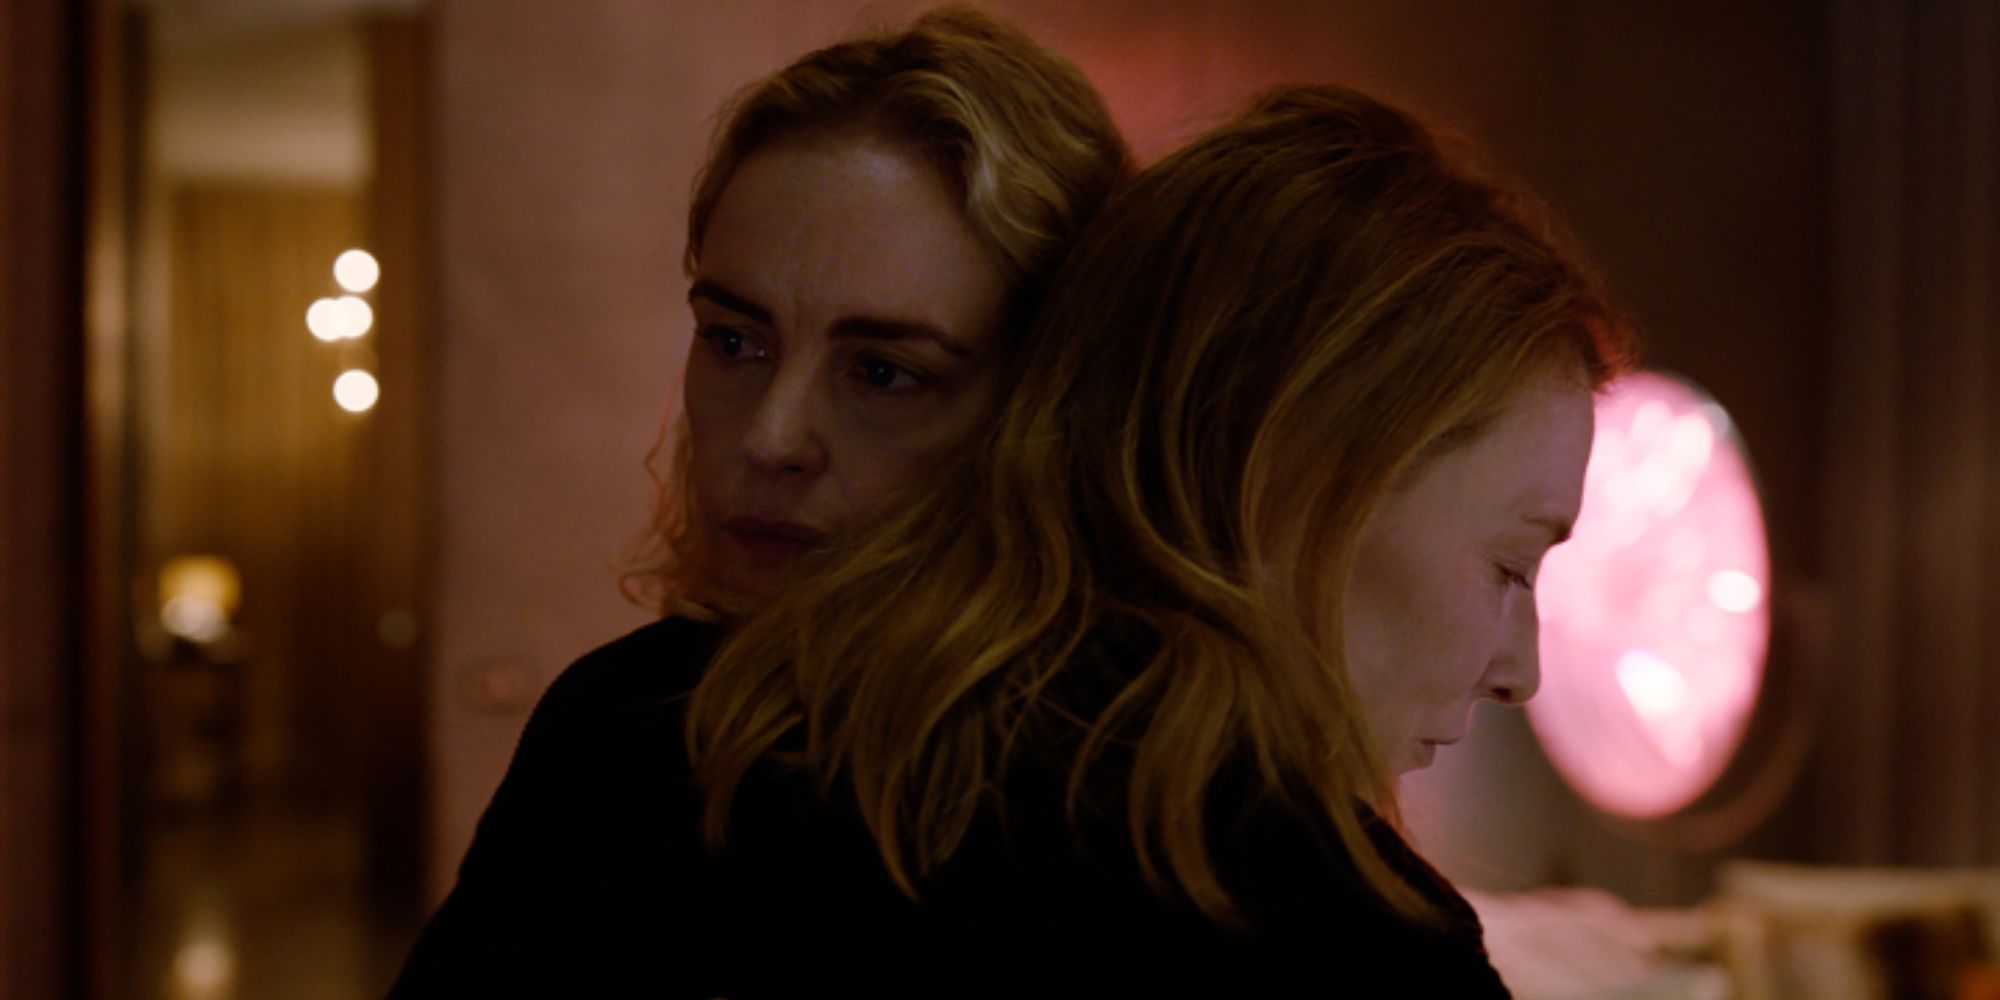 Sharon abraça Lydia e olha séria para TÁR.